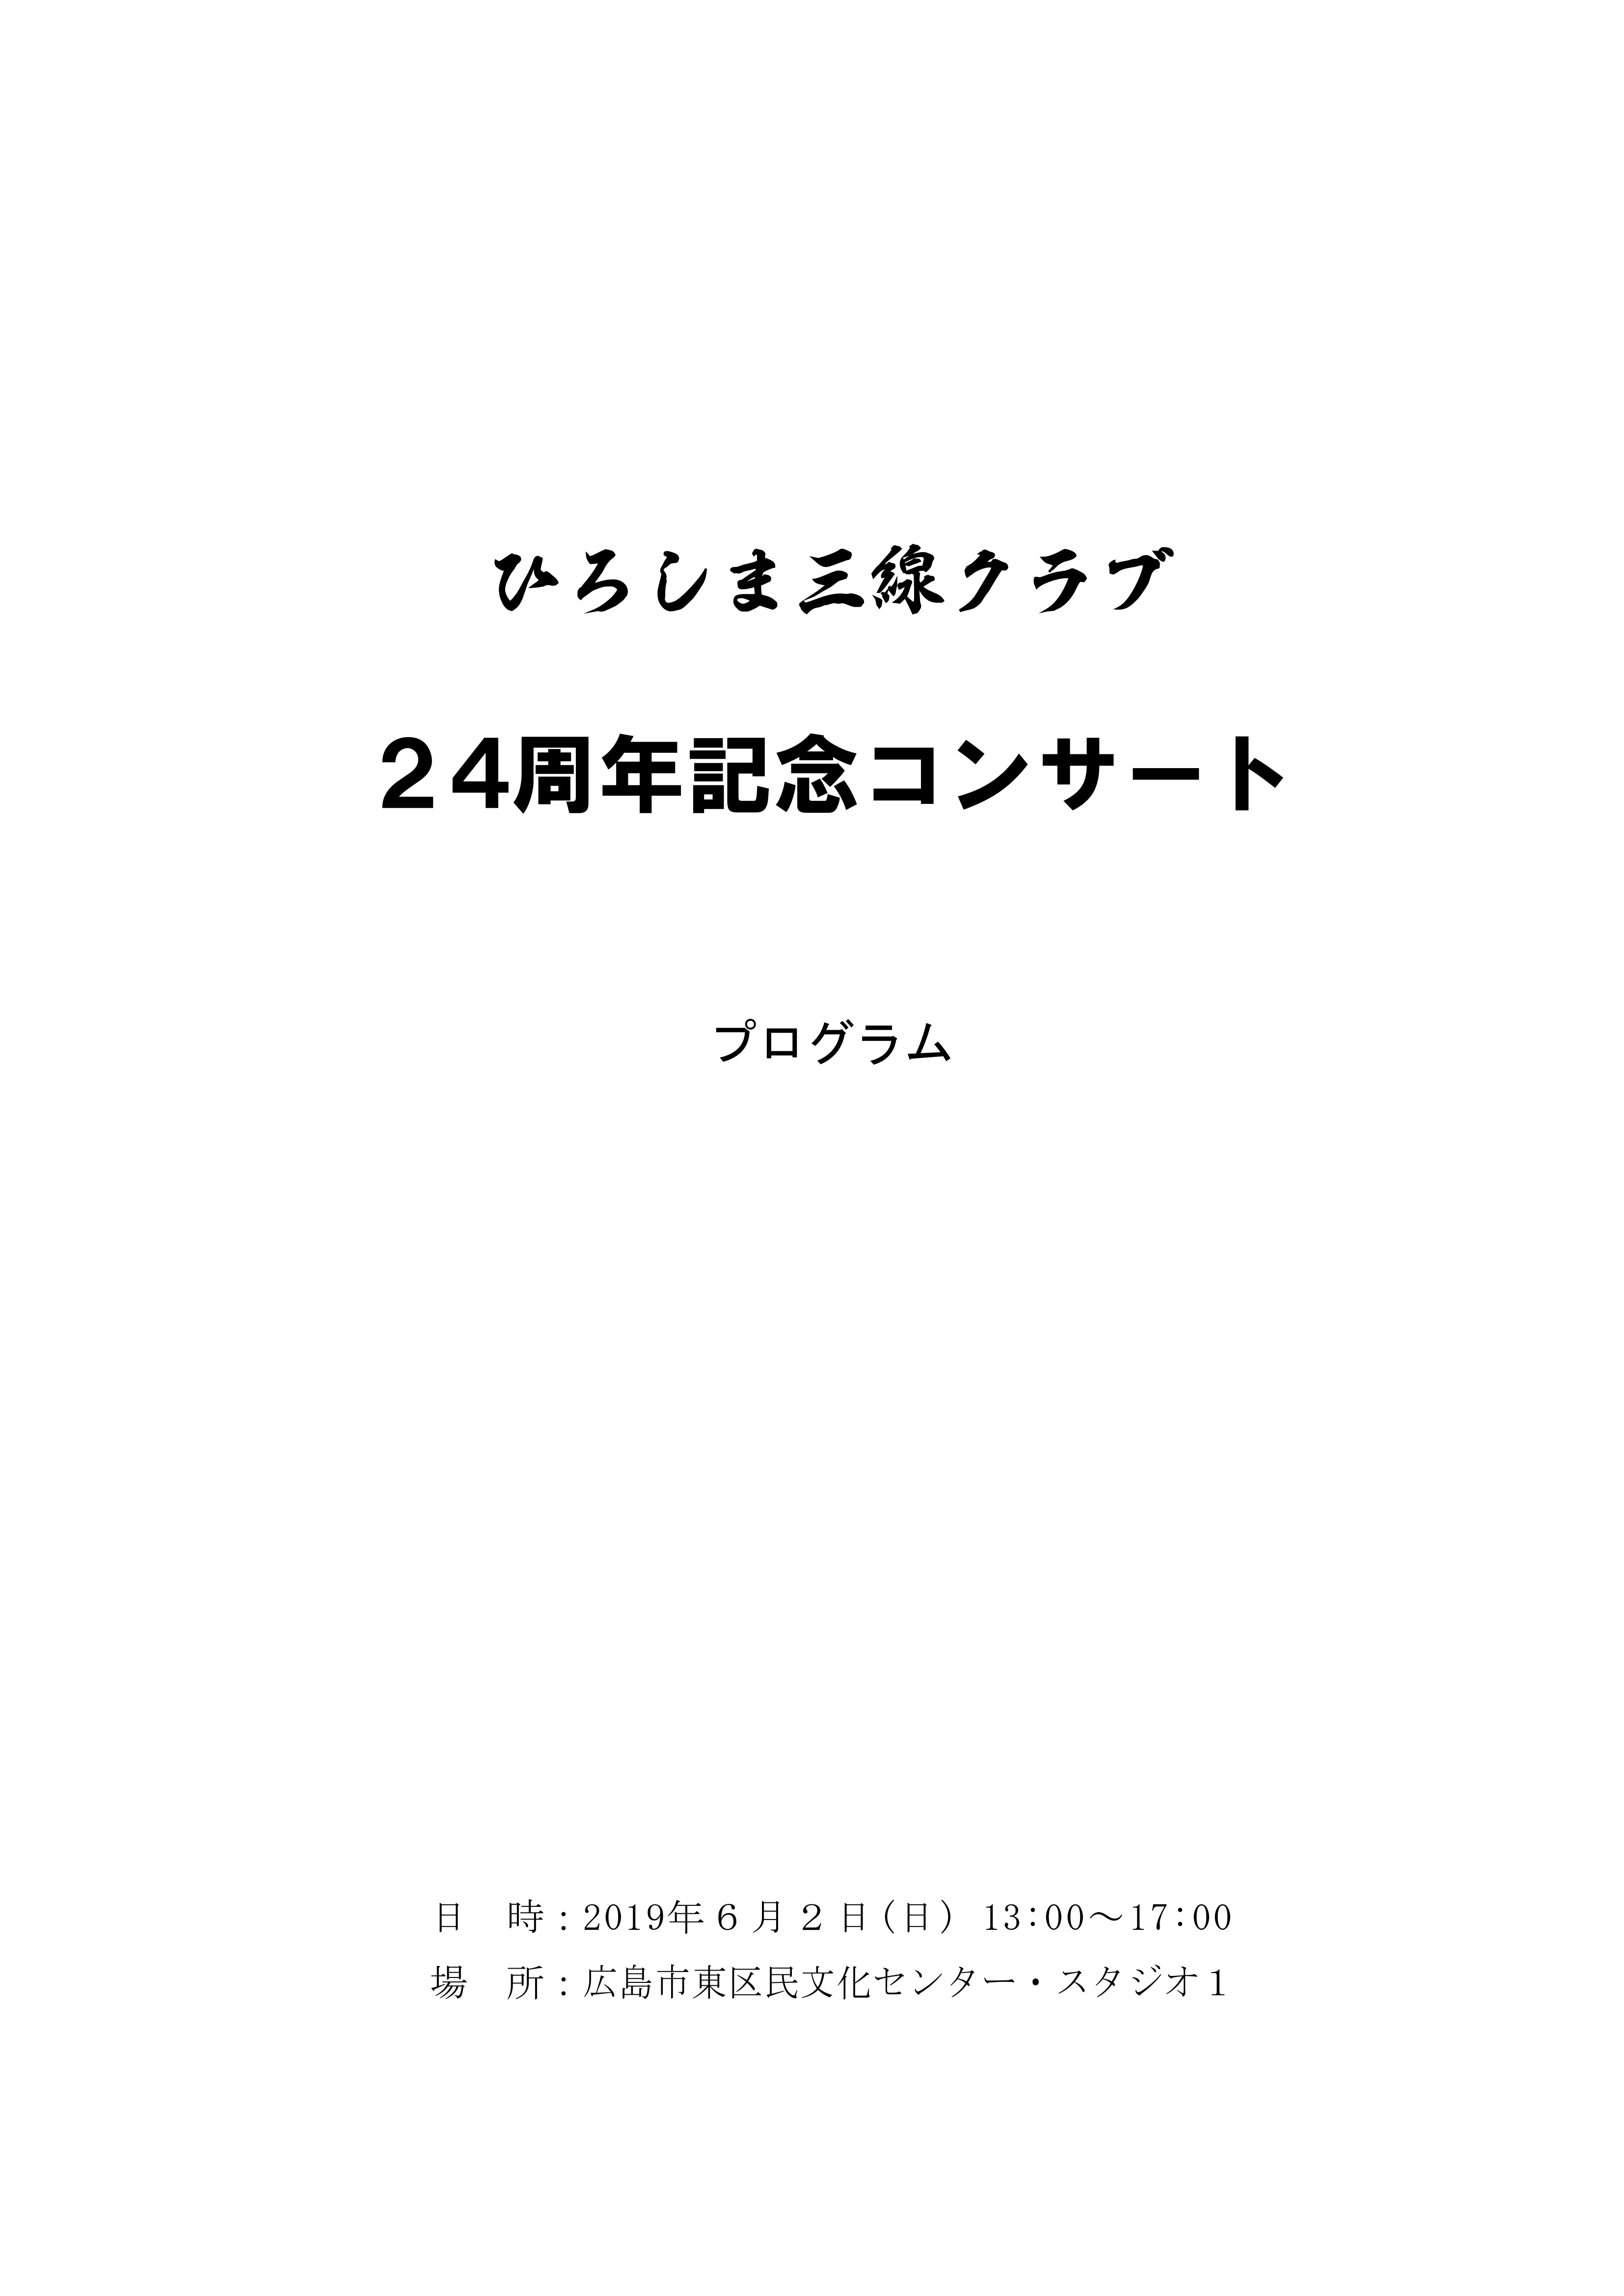 「ひろしま三線クラブ24周年記念コンサート」プログラム_PAGE0000